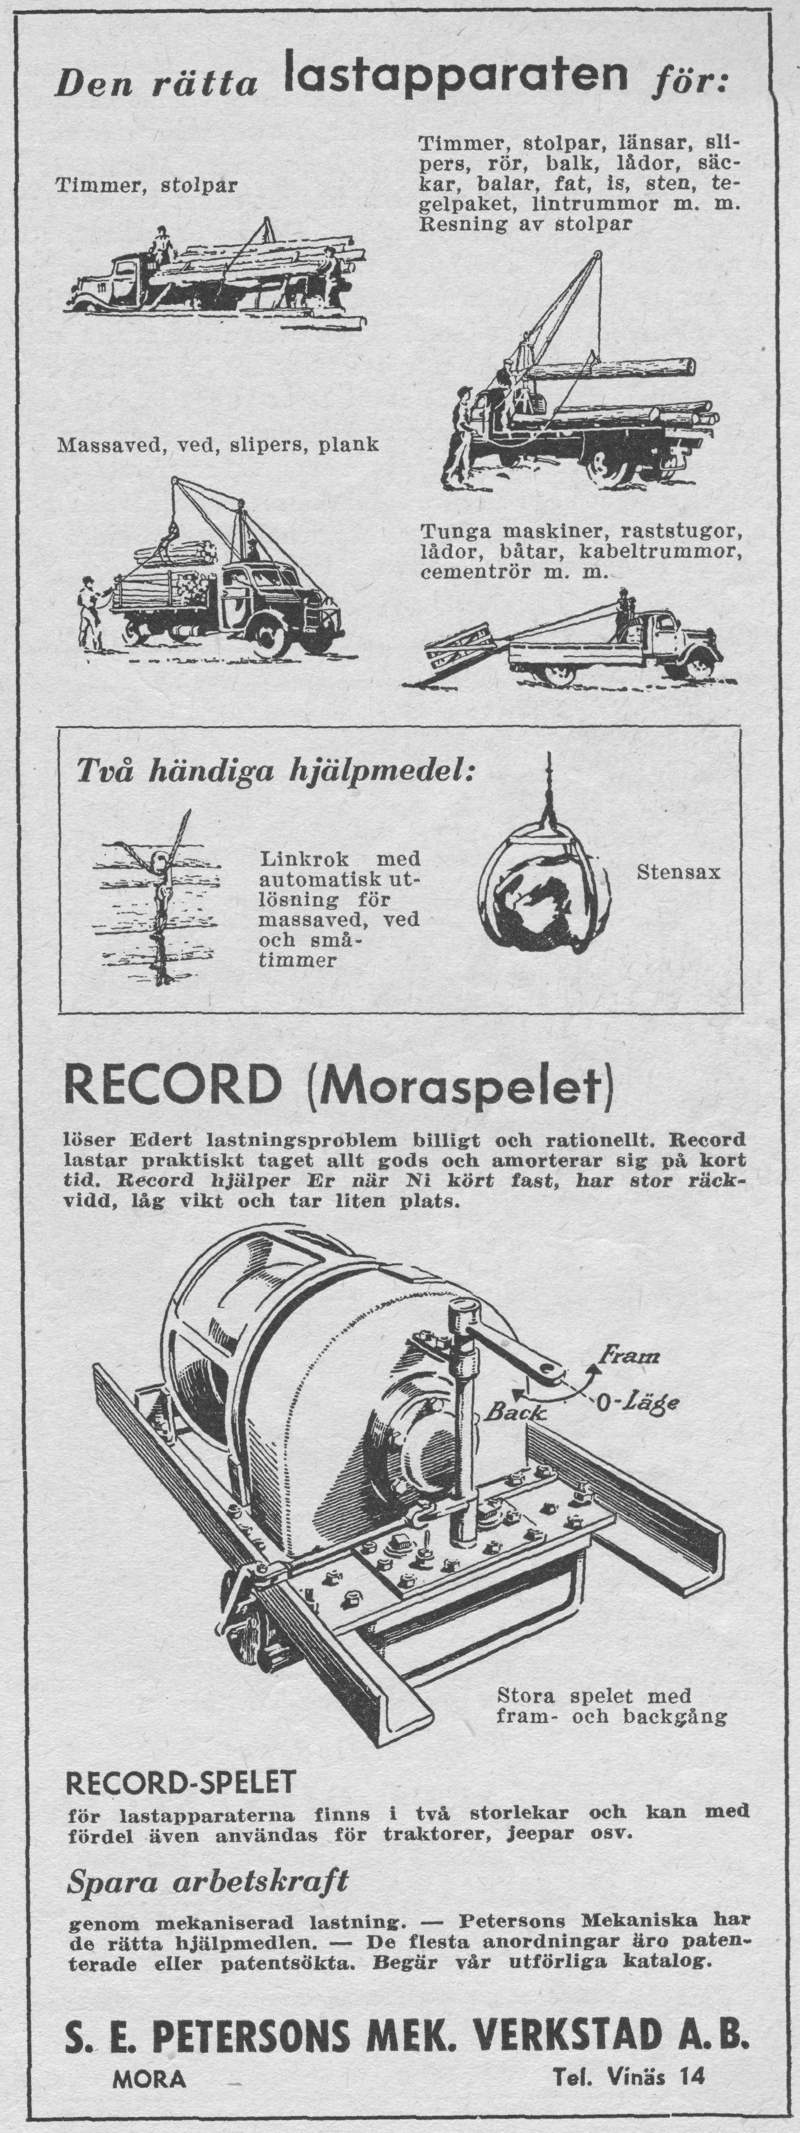 Petersons Mek Verkstad - Record Moraspelet - LR - Lastbilen Nr 1-1952.JPG